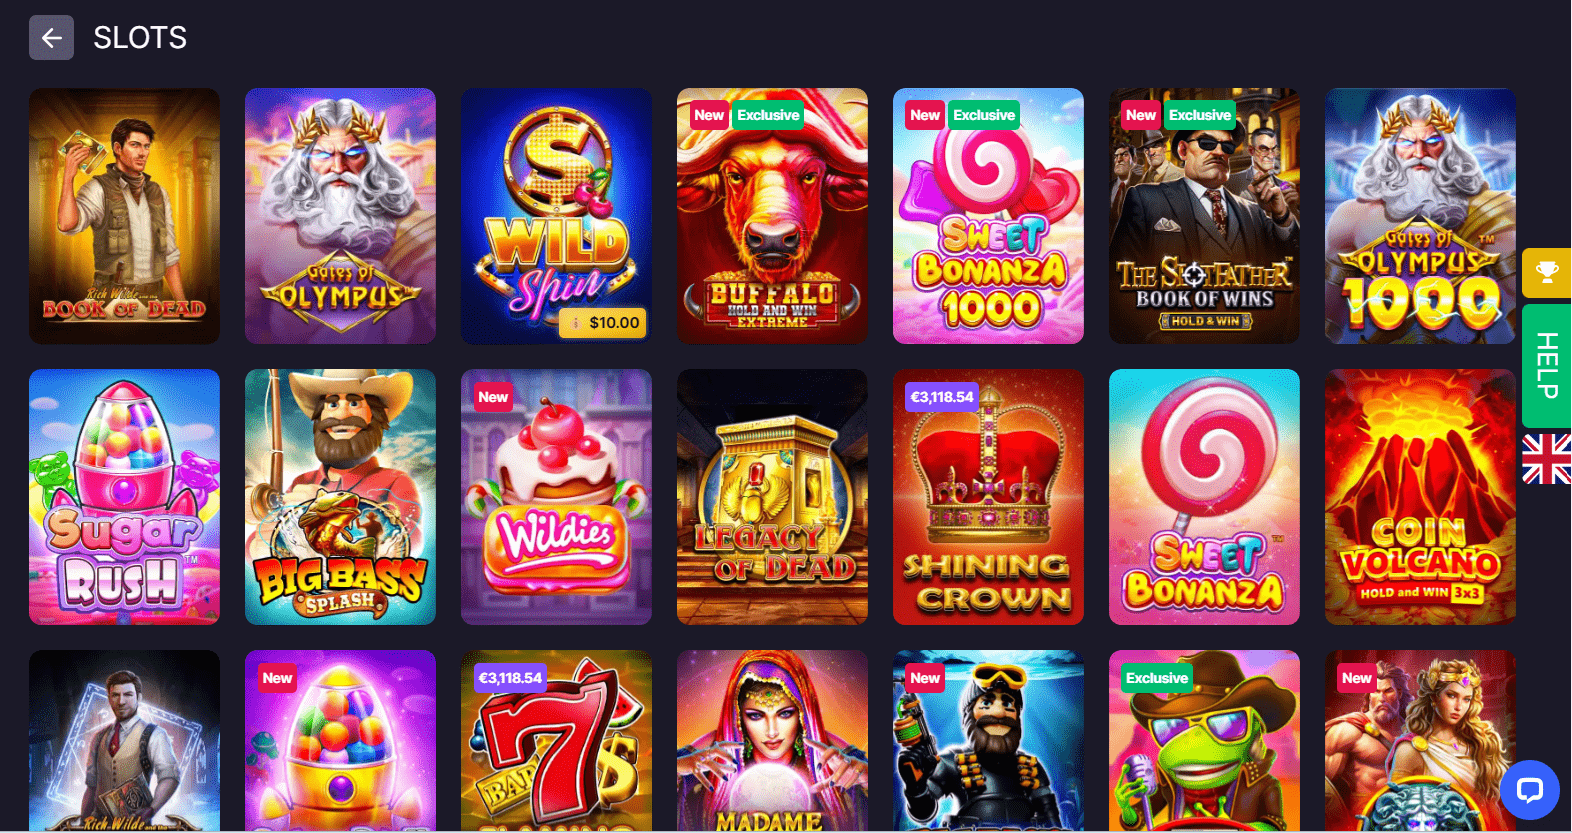 BitStarz Casino Games